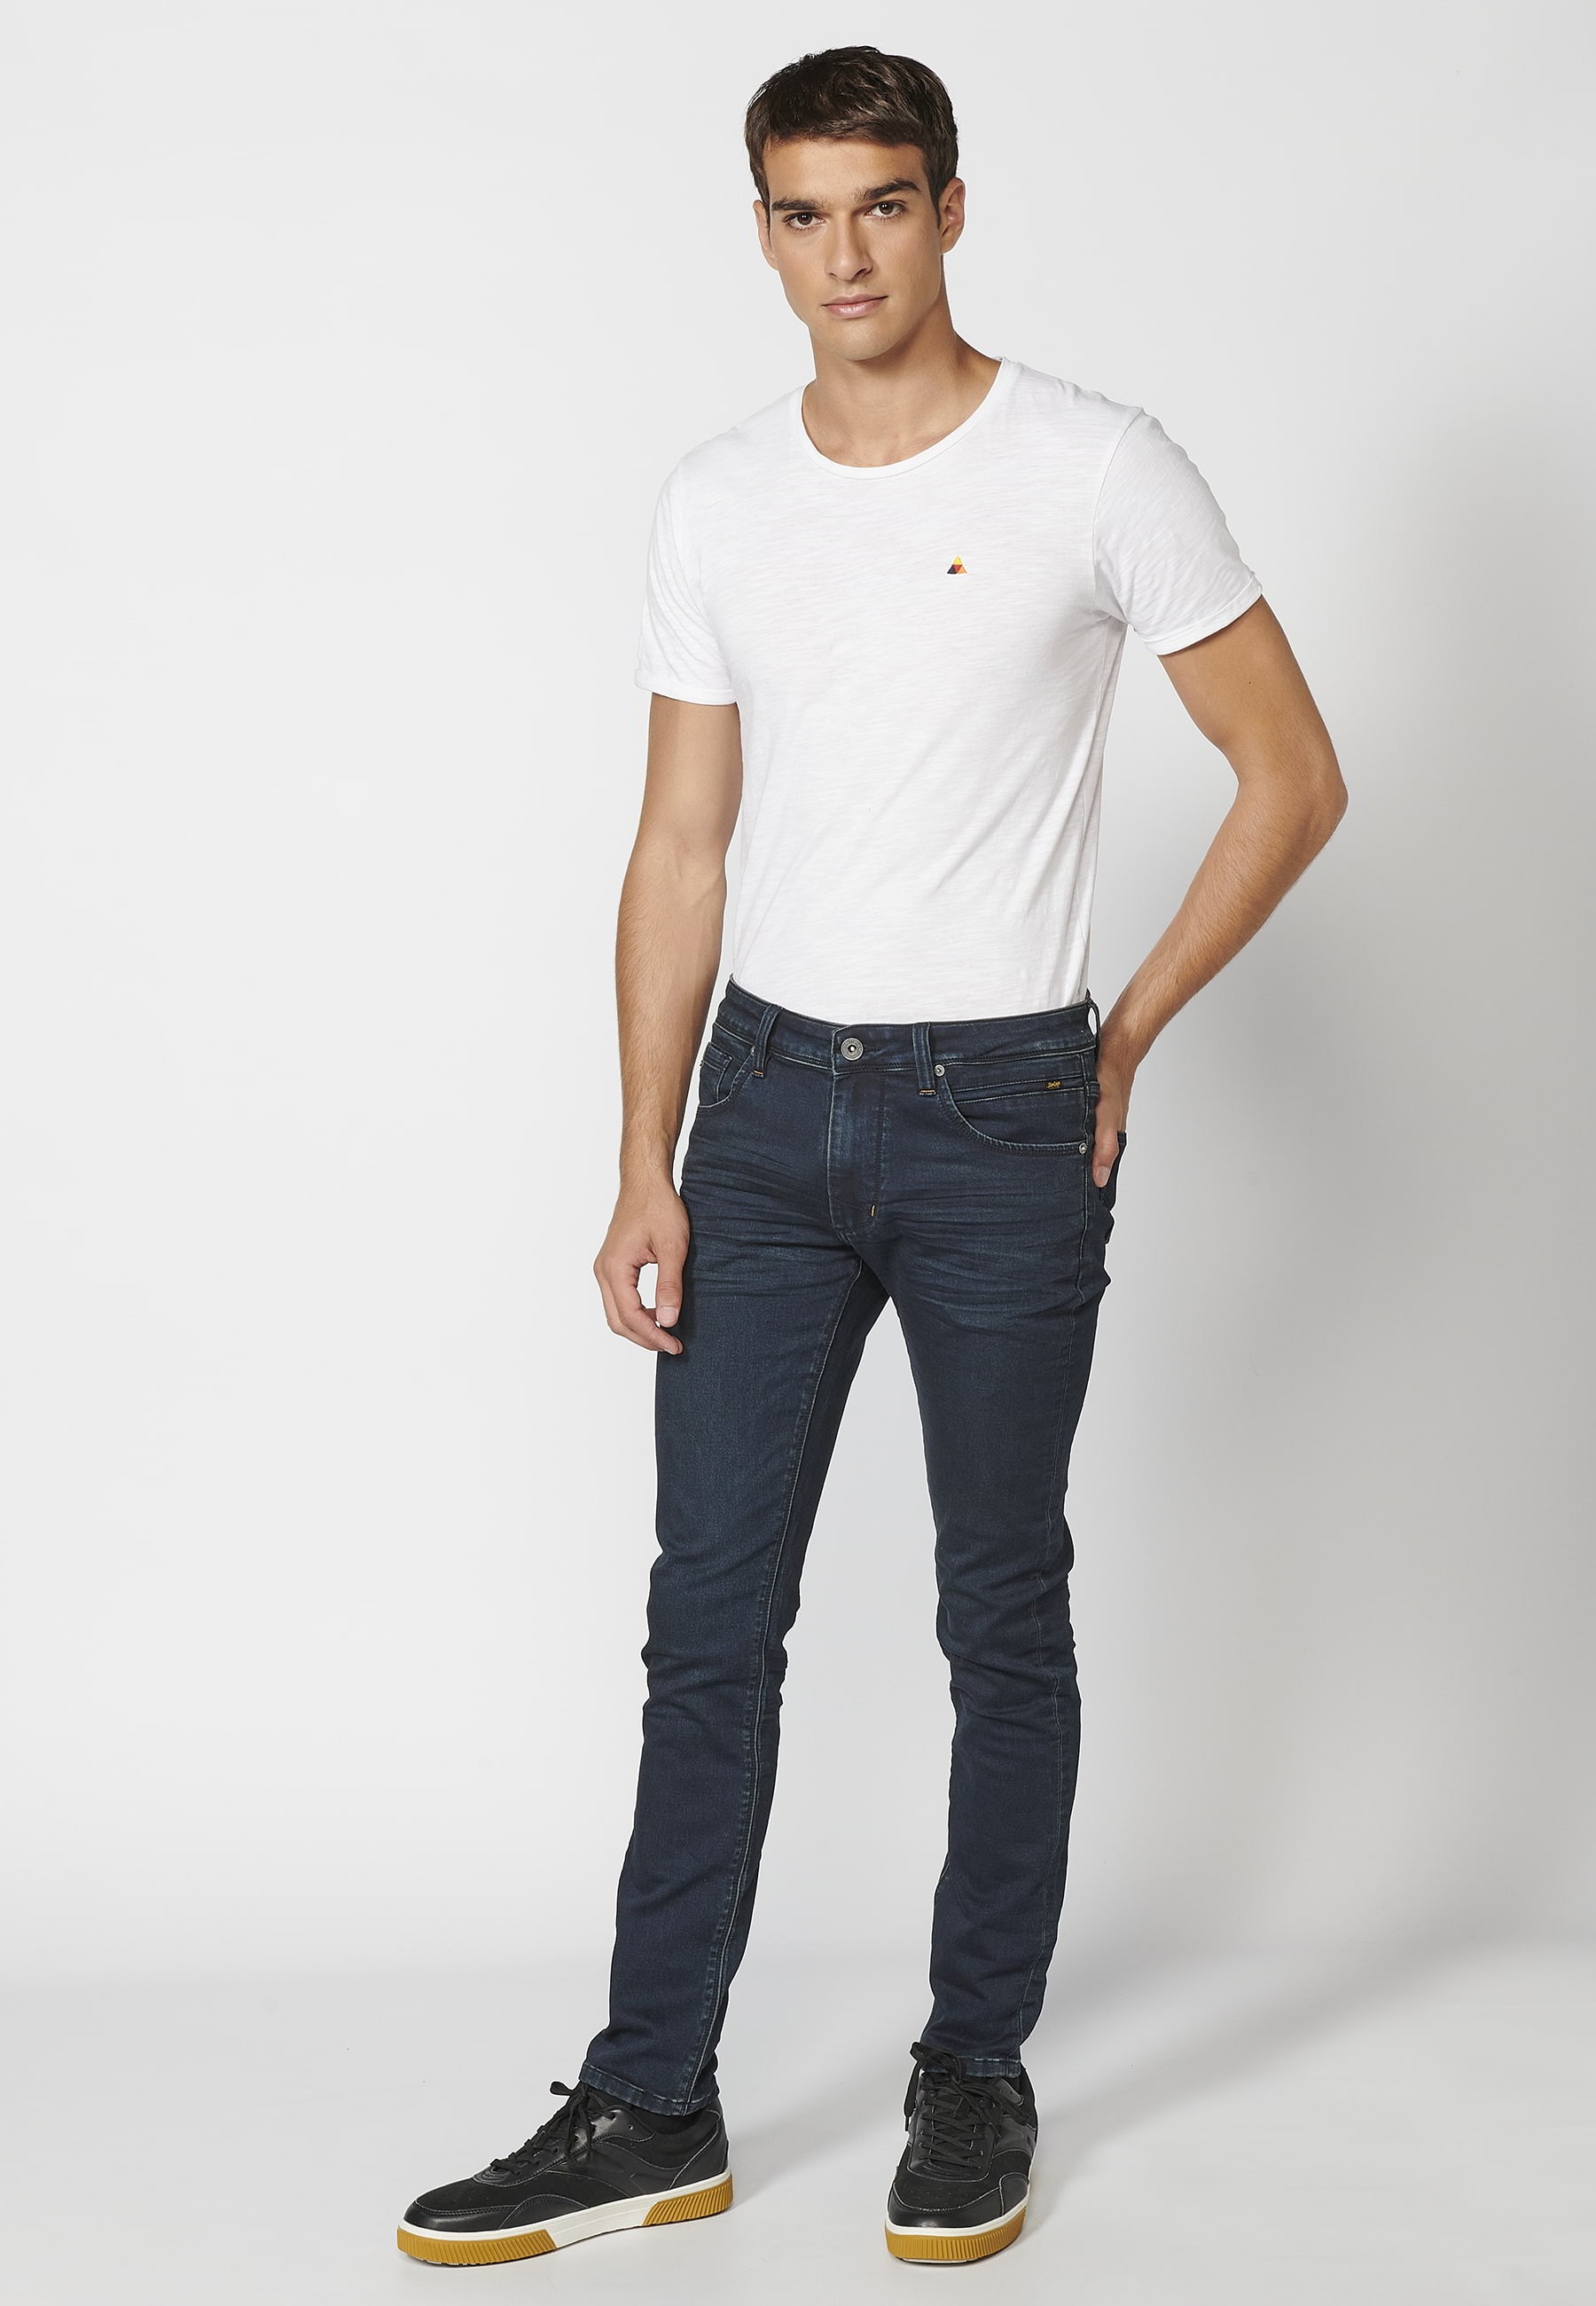 Lange Slim-Fit-Jeanshose, dunkelblaue Farbe für Herren